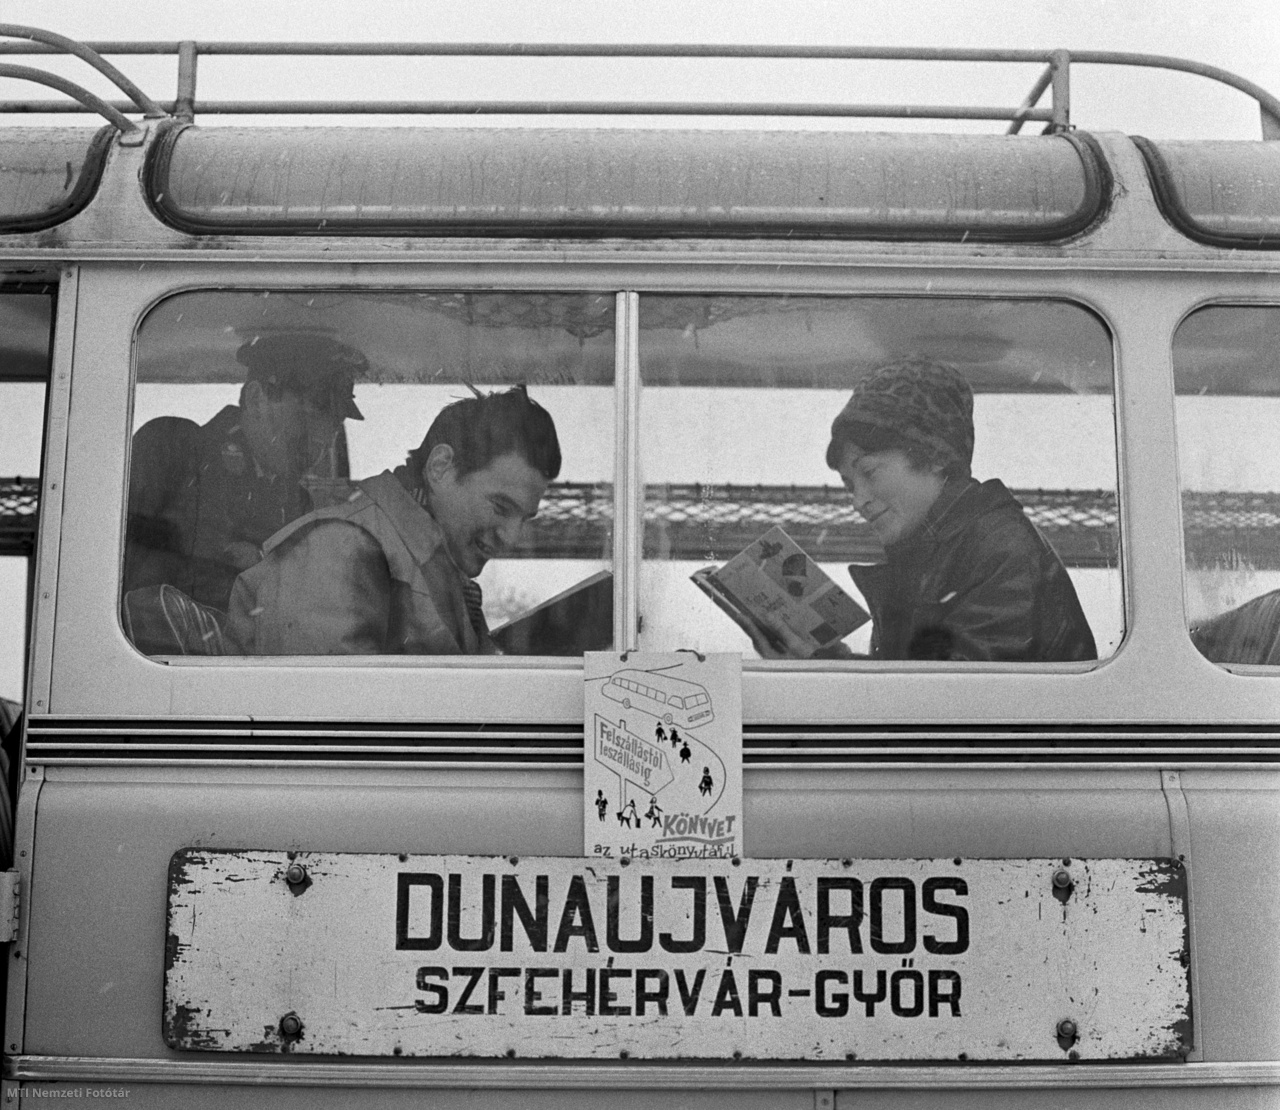 Dunaújváros, 1965. február 18. Utasok olvasnak a Magyar Államvasutak Közúti Gépkocsiüzeme (Mávaut) Dunaújváros–Székesfehérvár–Győr-útvonalon közlekedő autóbuszán. A járaton utazás közben válogathatnak, olvashatnak a kísérleti utaskönyvtár köteteiből, amelyet úgy válogattak össze, hogy rövid írásműveket, kisregényeket, novellákat, verseket, karcolatokat tartalmazzanak. Az utasok 55 könyv közül kölcsönözhetnek az utazás idejére. Már az első napon nagy forgalma volt az autóbuszkönyvtárnak, amely ha beválik, akkor a szolgáltatást kezdeményező Fejér megyei Vörösmarty Könyvtár más távolsági járaton is rendszeresíti majd a könyvkölcsönzést